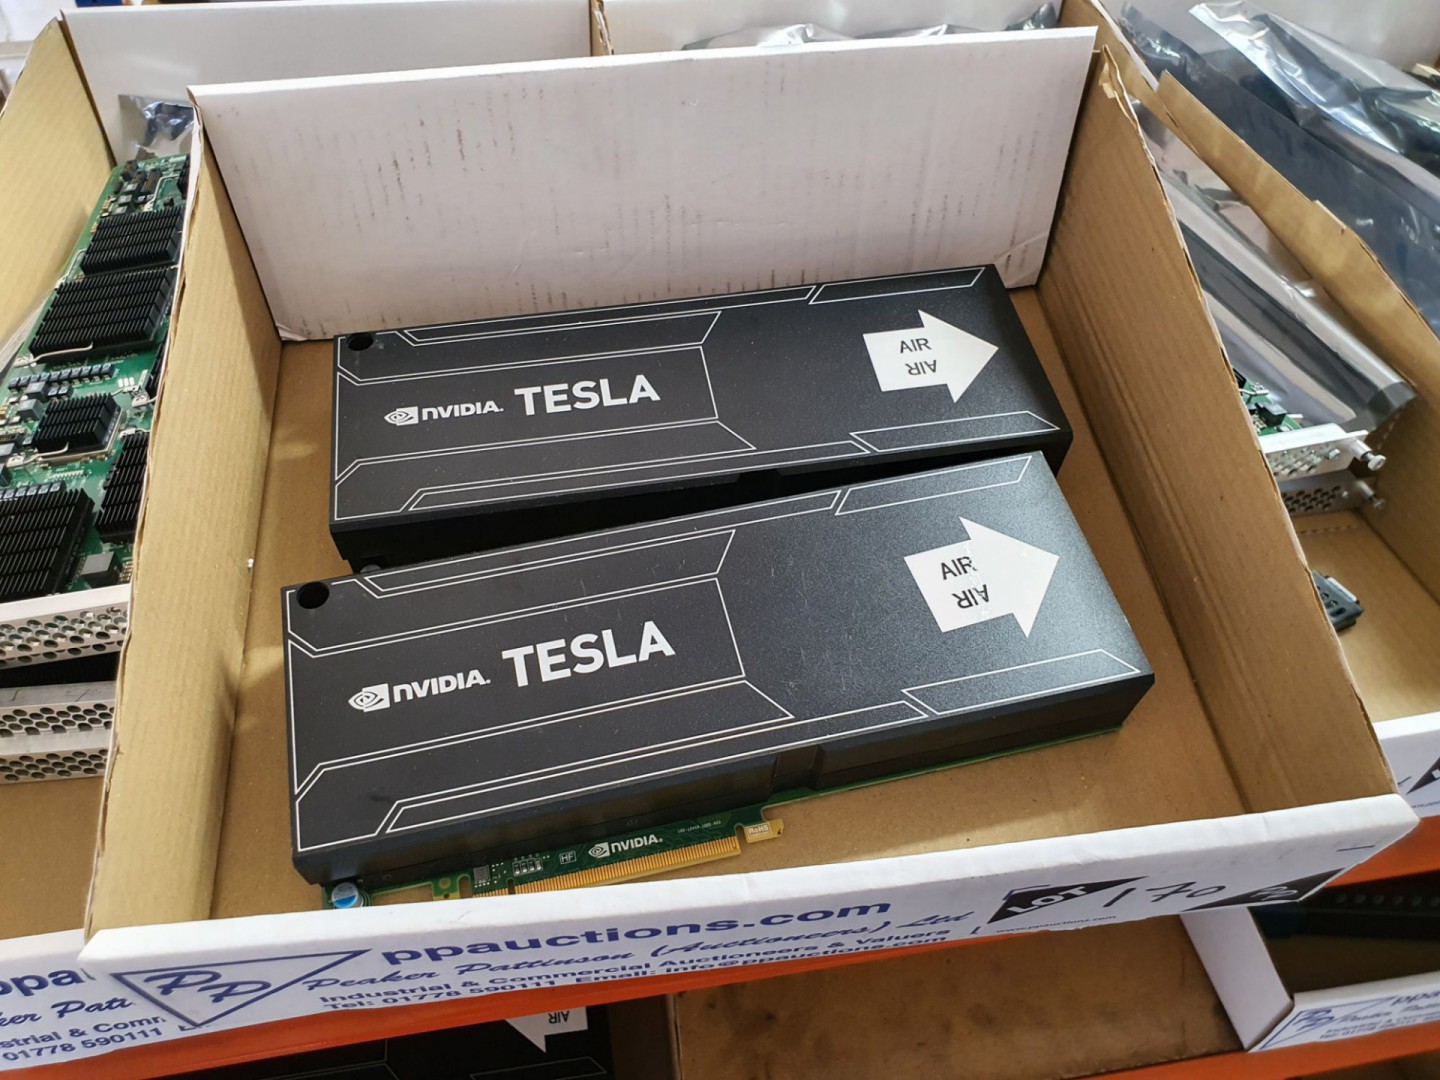 2x Nvidia Tesla K10 graphics accelerators